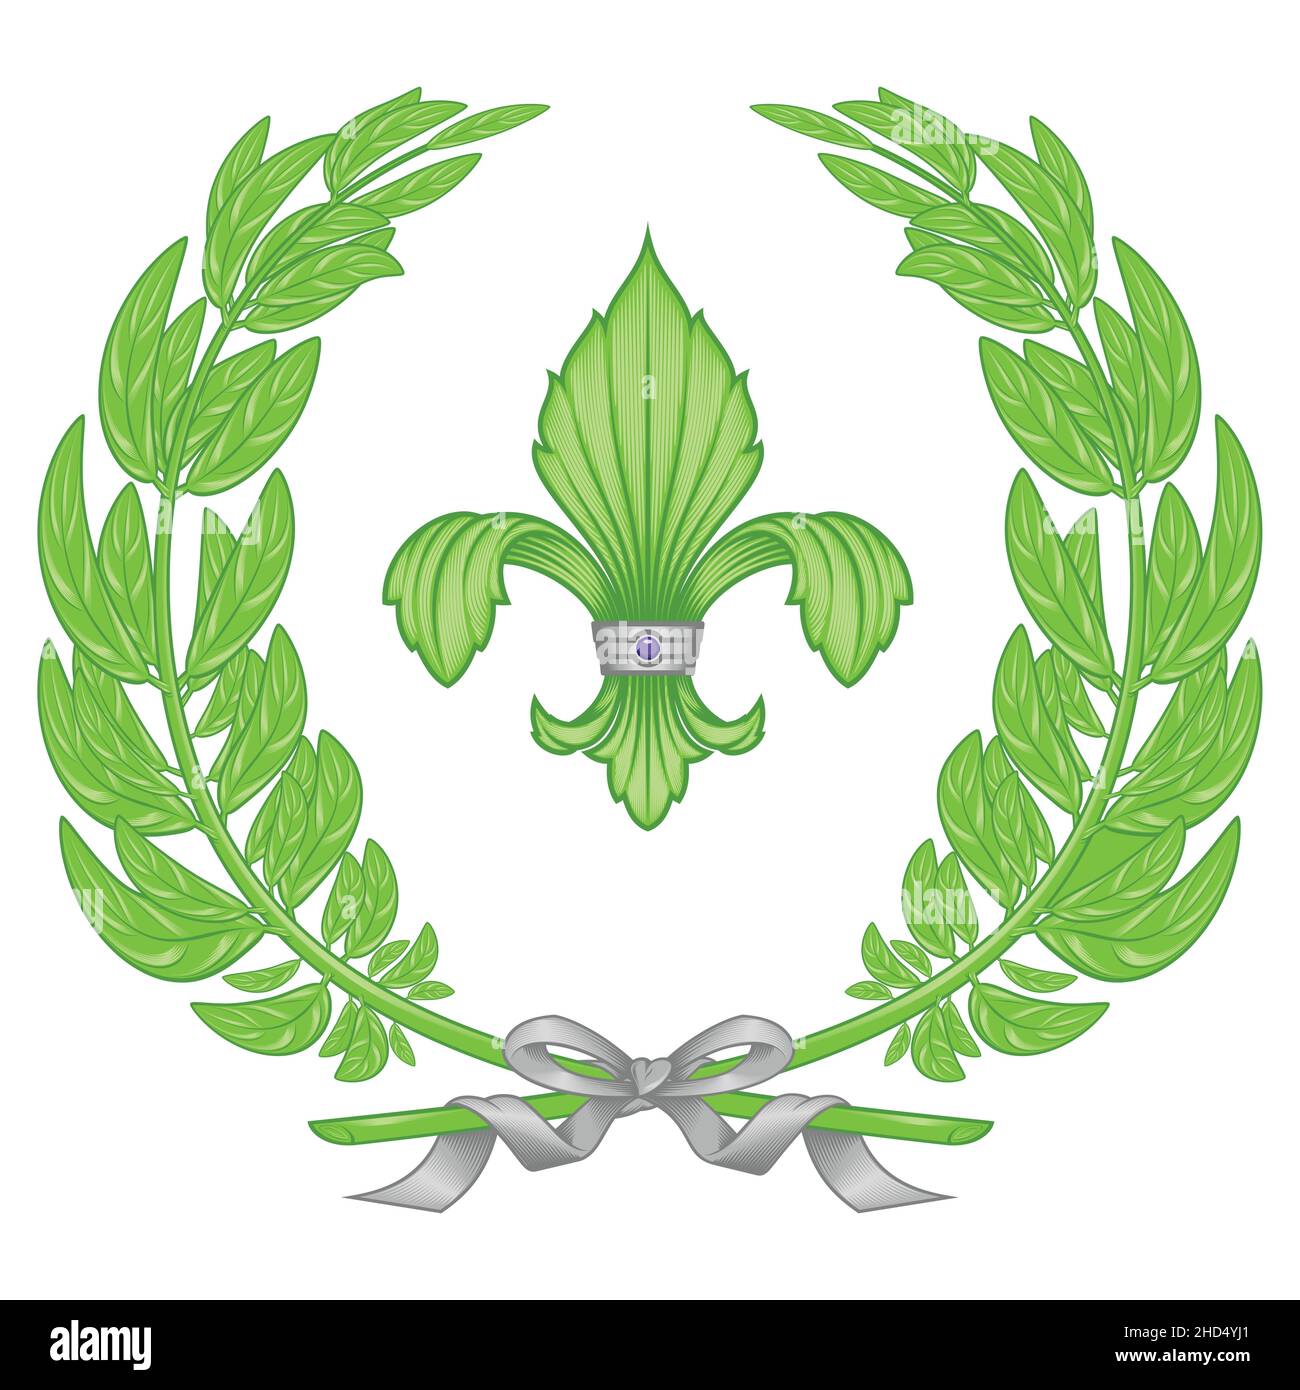 Dessin vectoriel de la fleur de lis avec couronne de Laurier, représentation de la fleur de lis, symbole utilisé dans l'héraldique médiévale Illustration de Vecteur